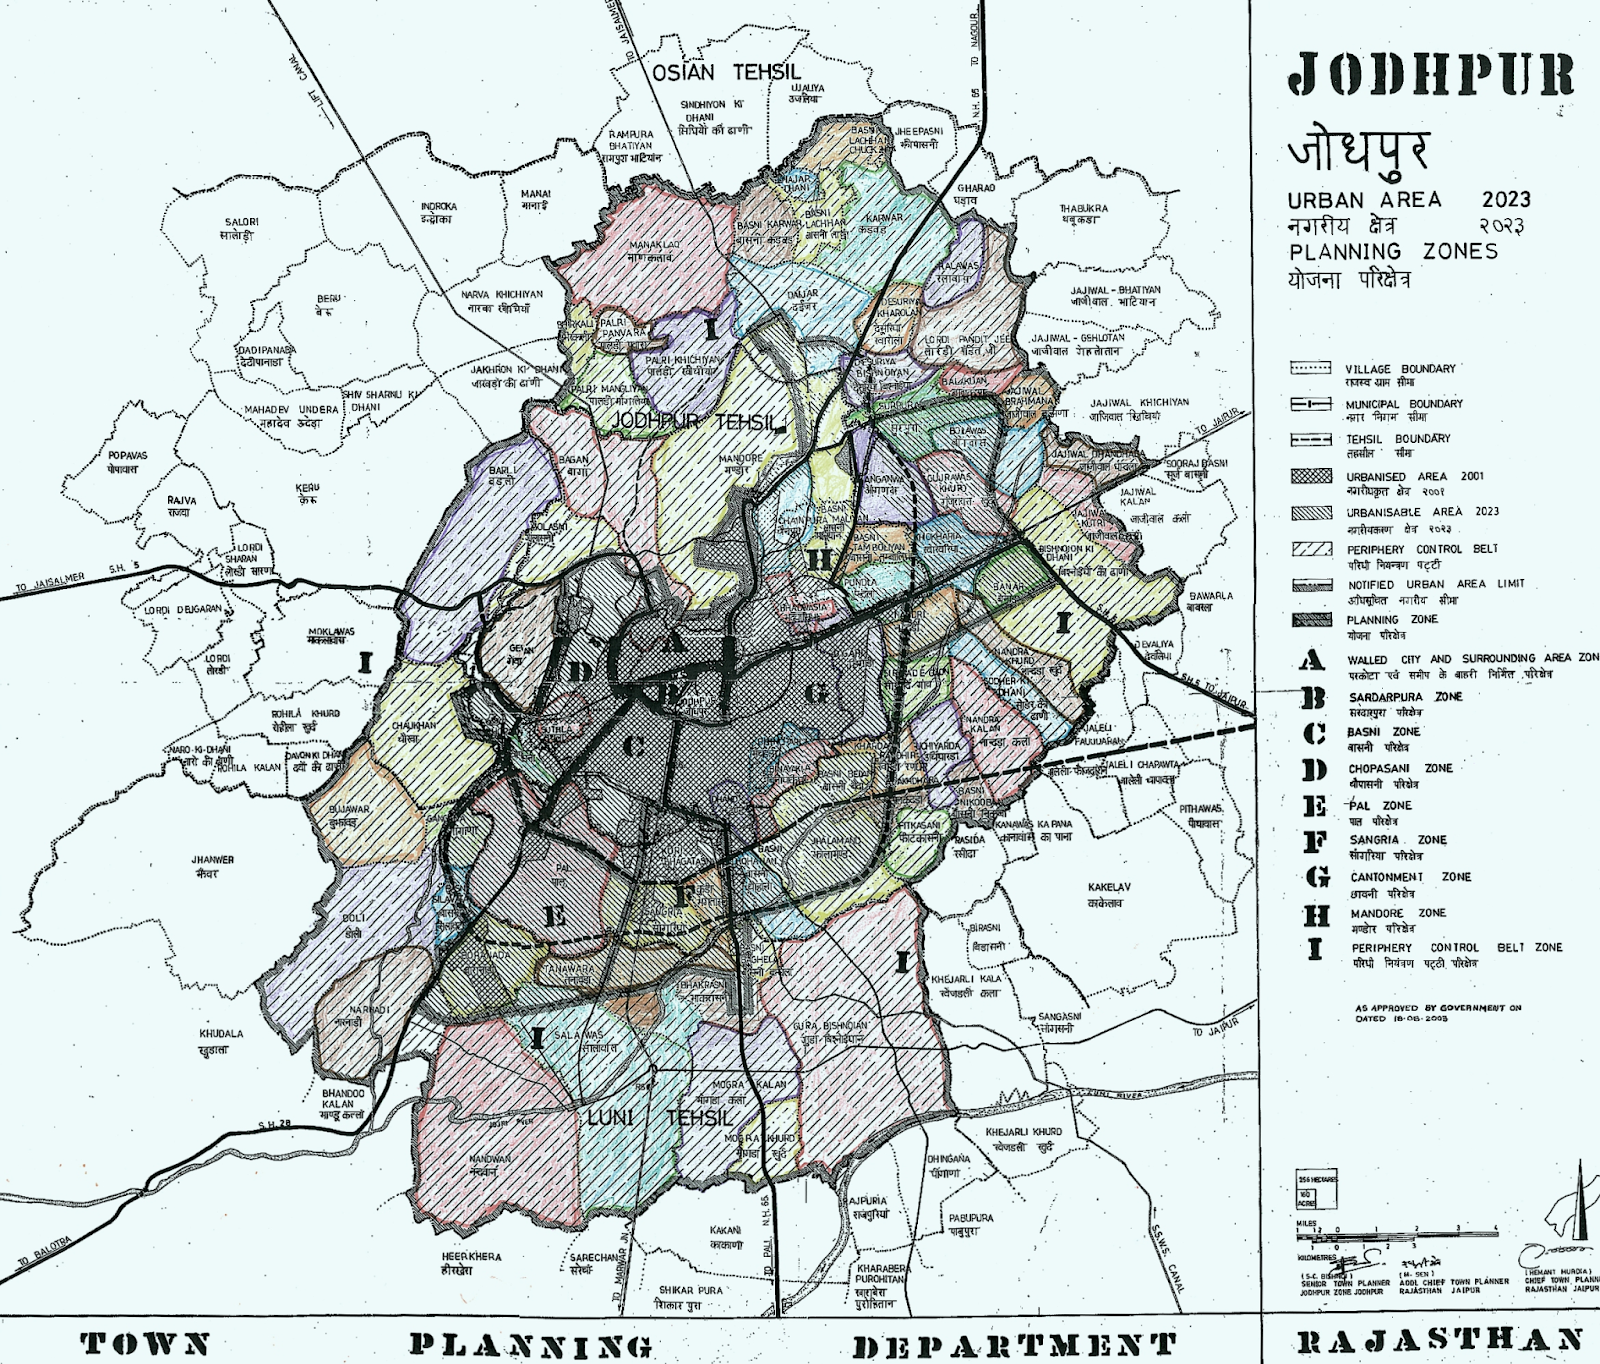 Jodhpur Master Plan 2031 